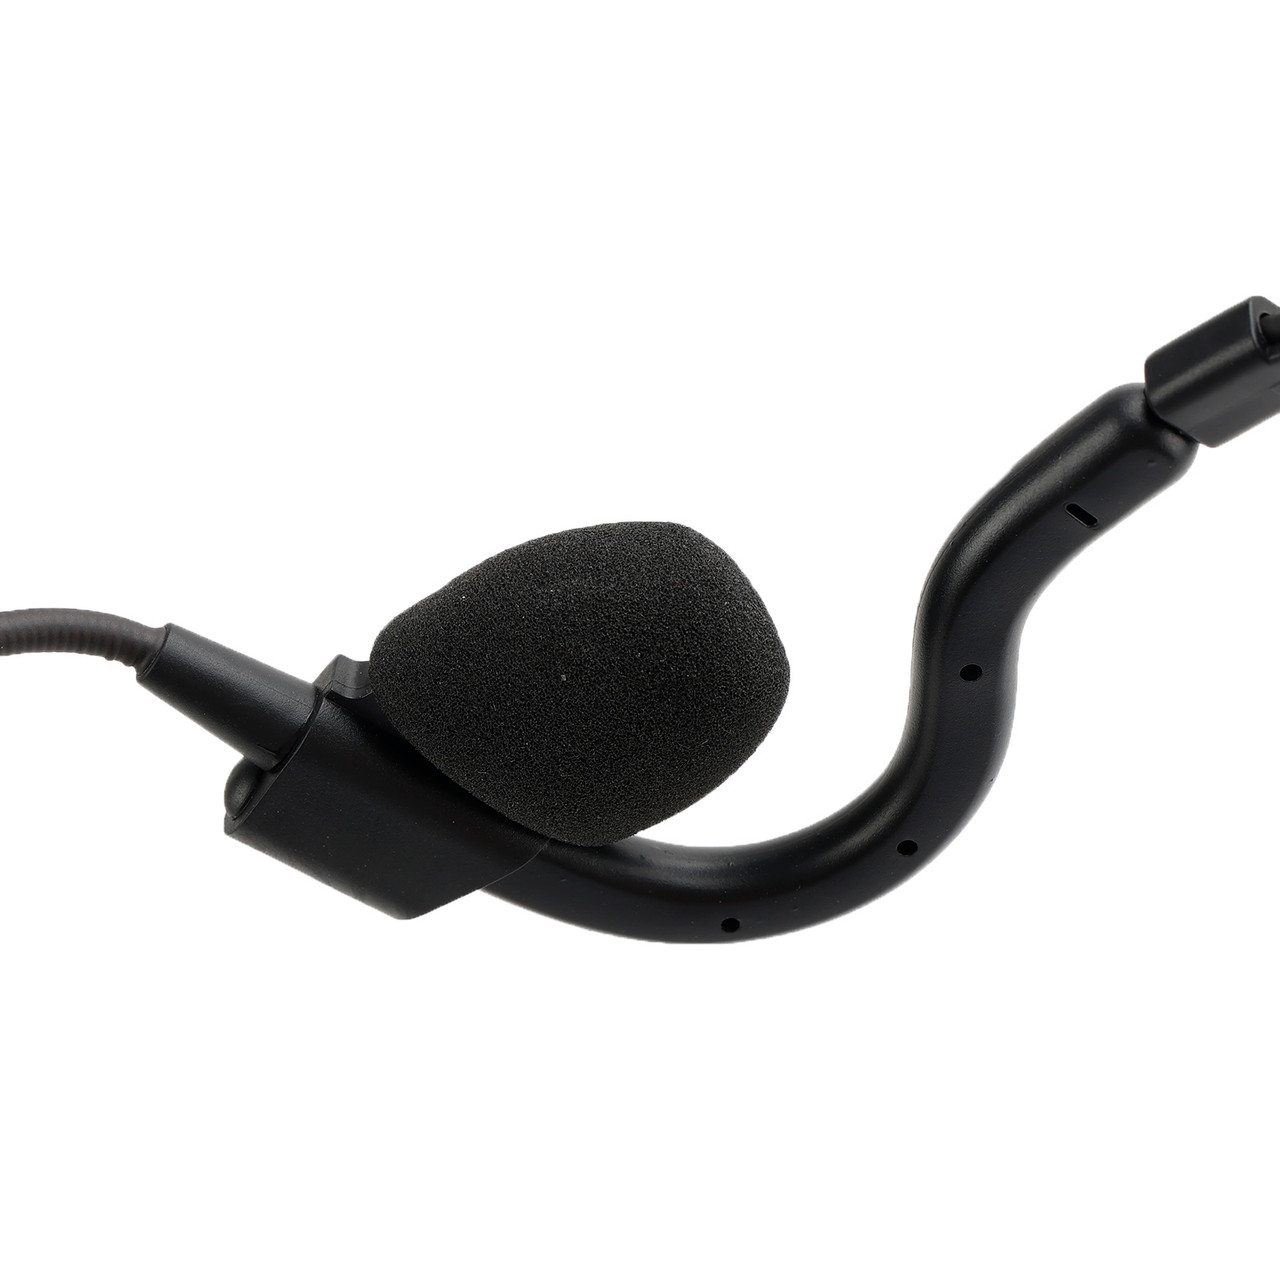 7.1-C8 Advanced Rear Mount Big Plug Tactical Earhook Headset Earphone In-ear